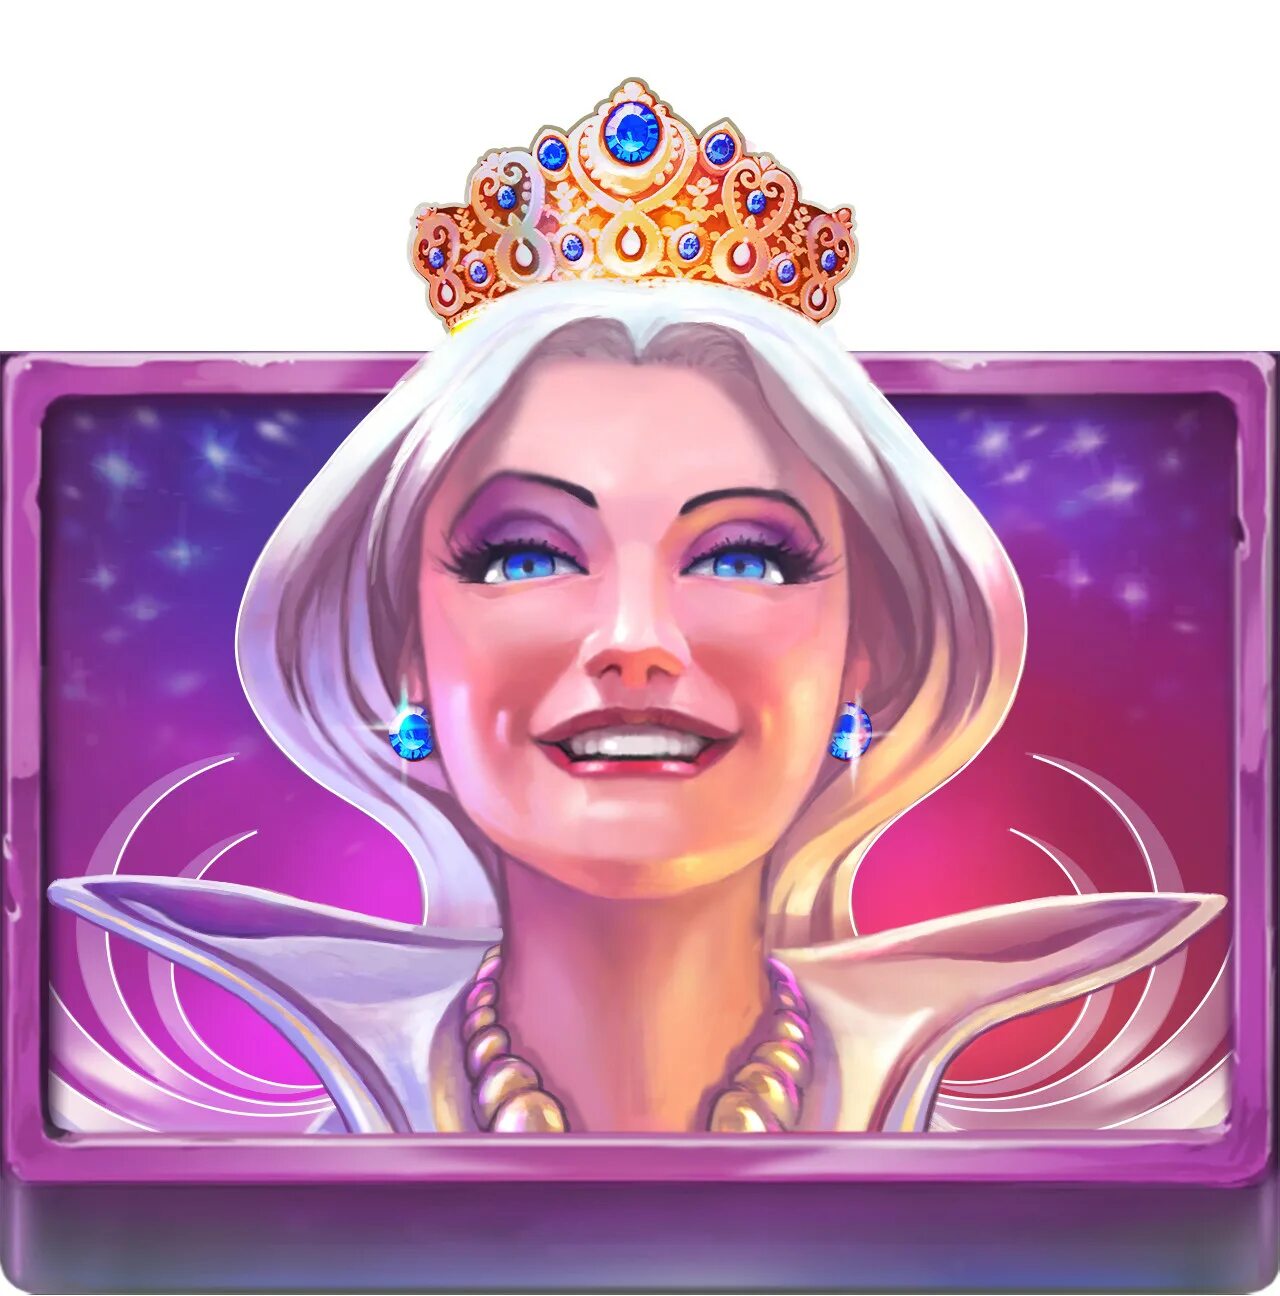 Crystal queen. Казино Кристал Квин. Портрет Королева с радугой. Игровой автомат Crystal Queen. Кристальная Королева.